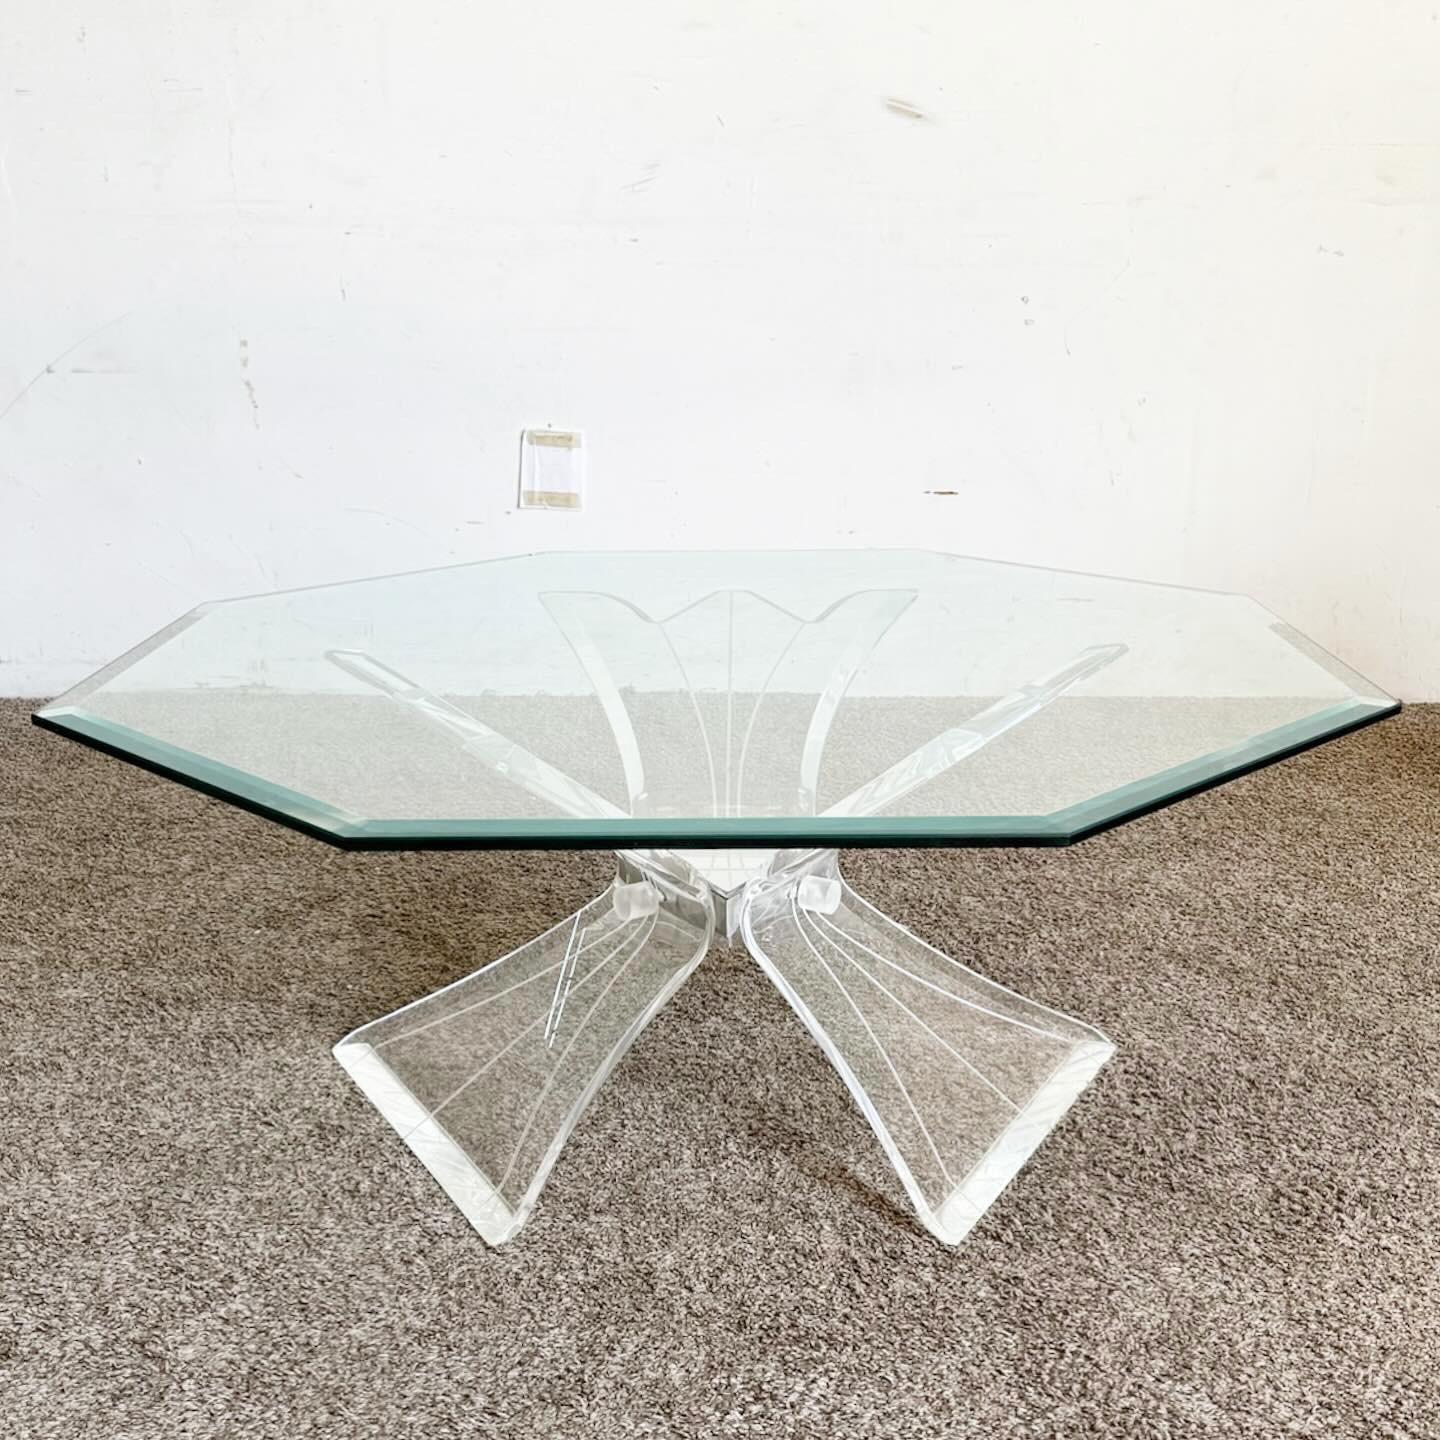 La table basse octogonale postmoderne à plateau en verre biseauté Lucite témoigne d'un design postmoderne audacieux. Sa forme octogonale unique et son cadre en lucite transparent lui confèrent un aspect moderne et saisissant. Le plateau en verre